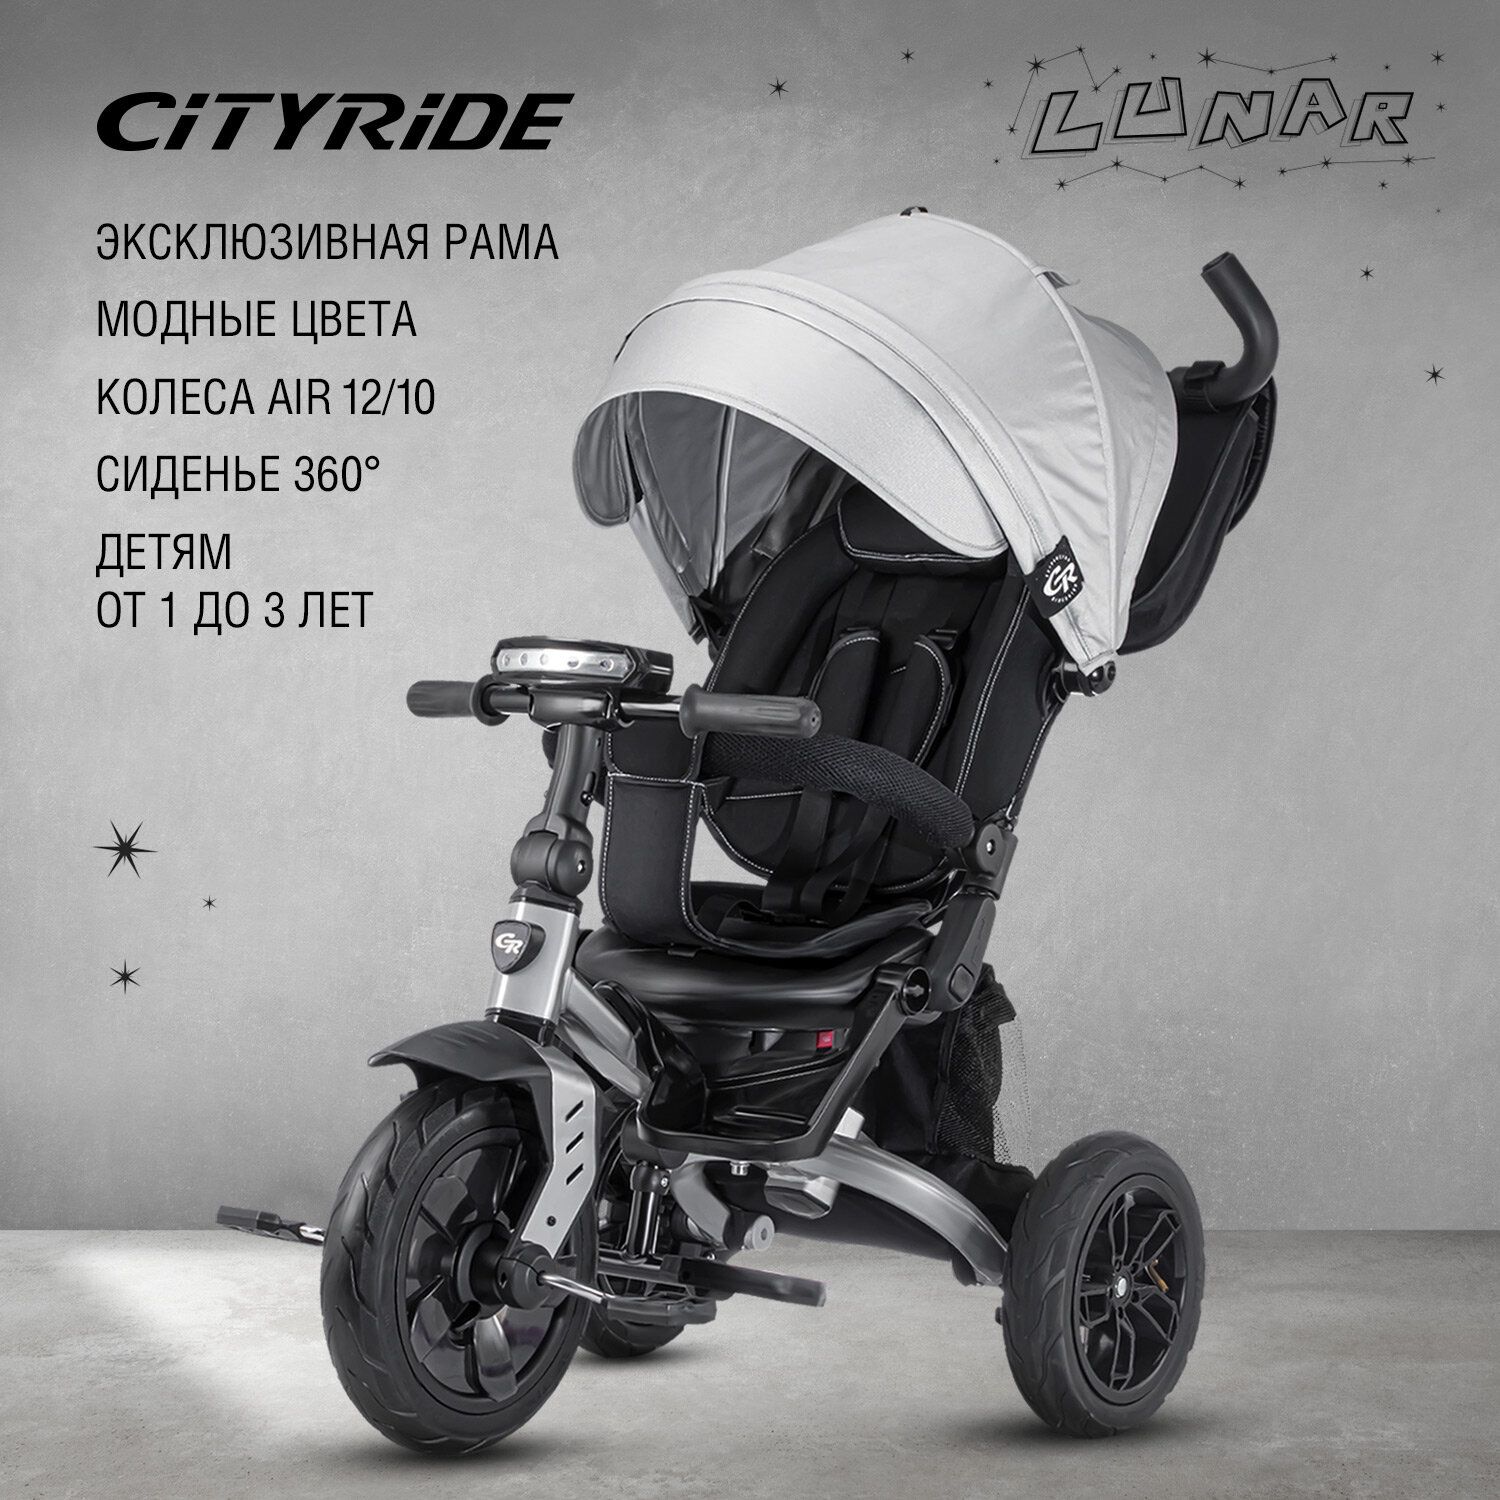 Велосипед детский 3-колесный ТМ CITYRIDE LUNAR, складная крыша, надувные колеса 12"/10", ножной тормоз, поворот сиденья 360◦, свет/звук, CR-B3-10GY